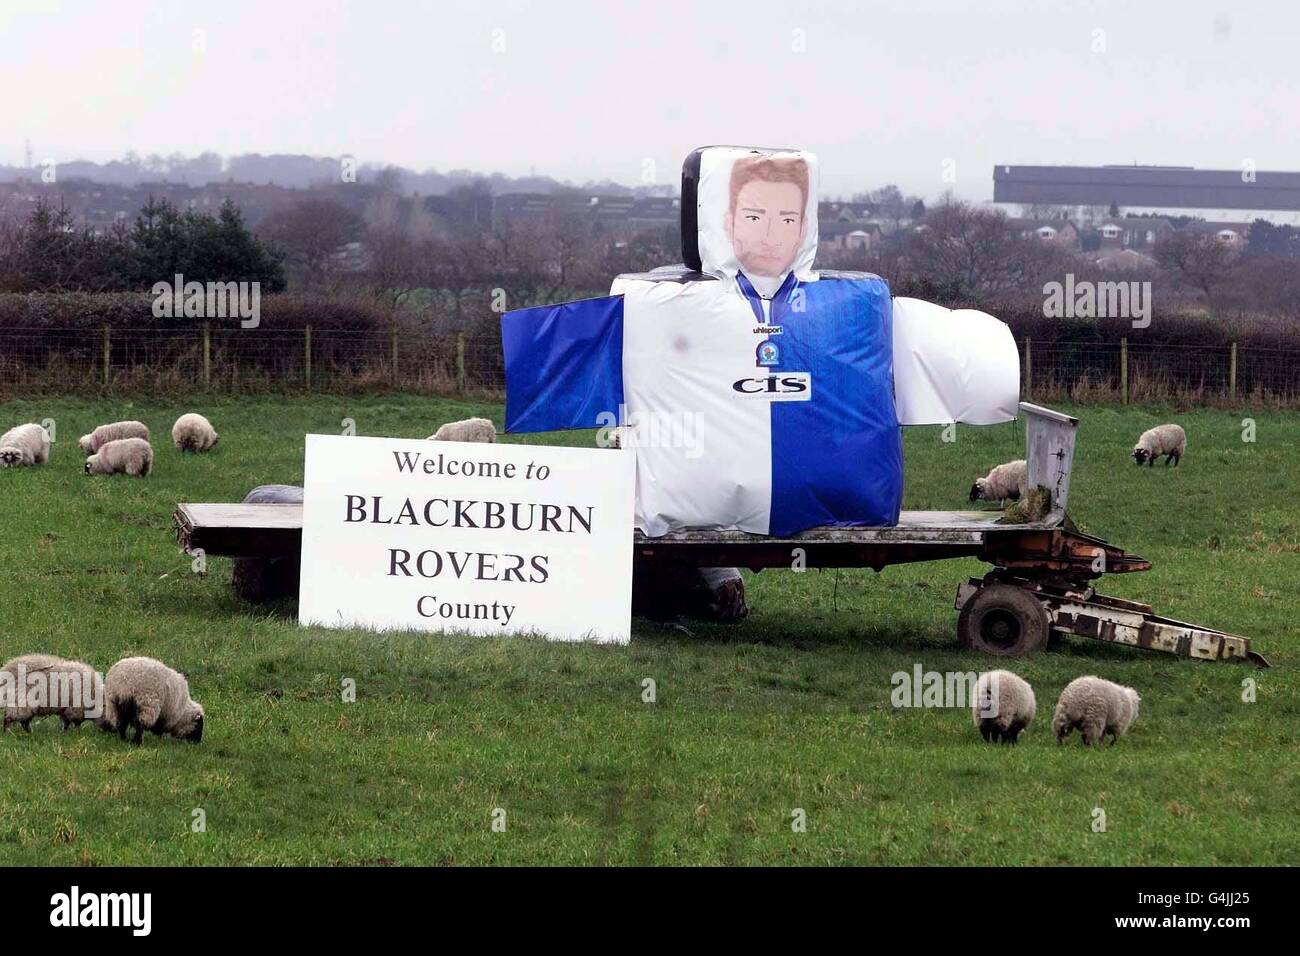 Un fermier fanatique de football a mis en place un modèle géant de l'ancien attaquant et capitaine de Blackburn Rover Chris Sutton dans son champ par l'A61 près de Bolton.Sutton a été rappelé à l'équipe de football d'Angleterre. Banque D'Images